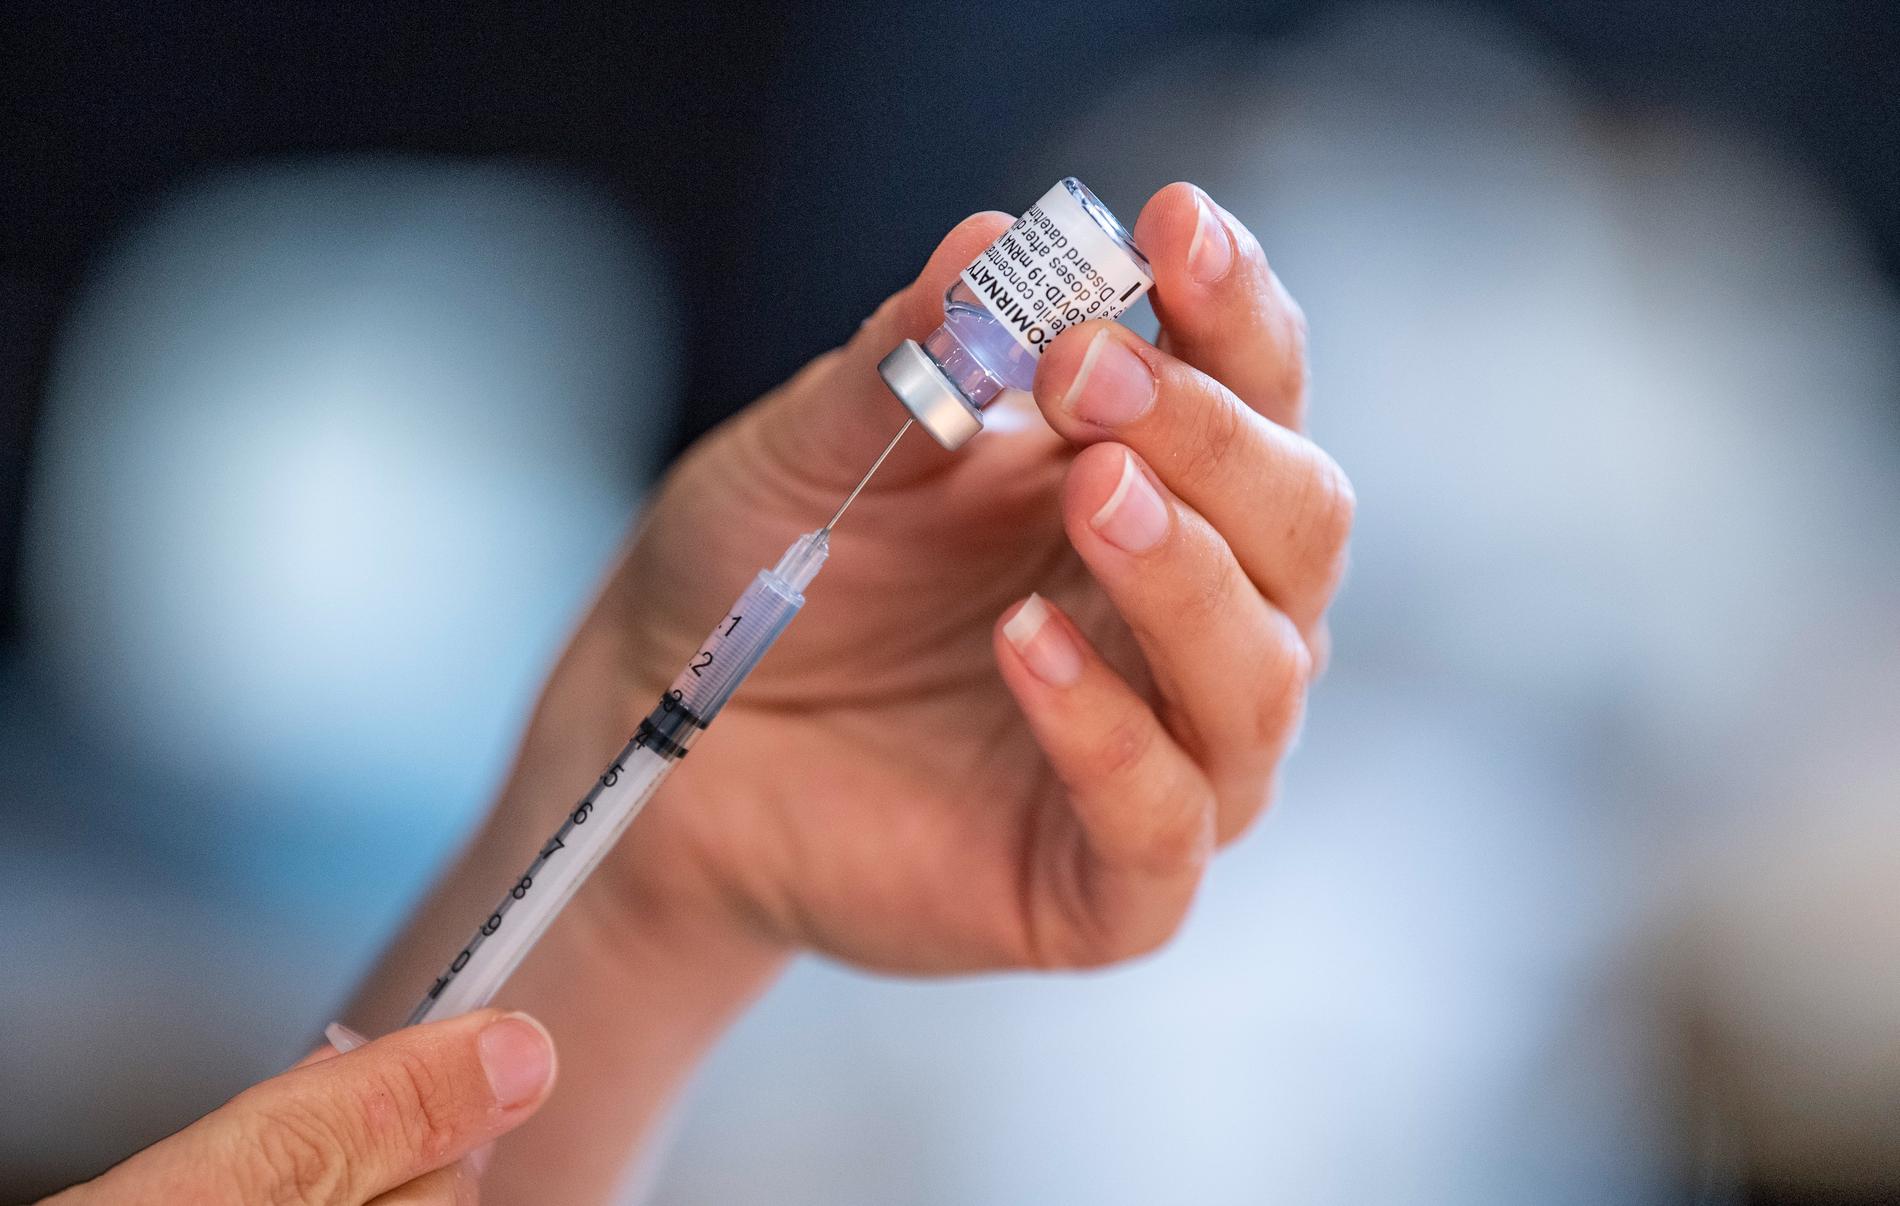 200 sekunder kunde visa hur Svea Vaccin bröt mot regler kring hur vaccinet ska hanteras. 